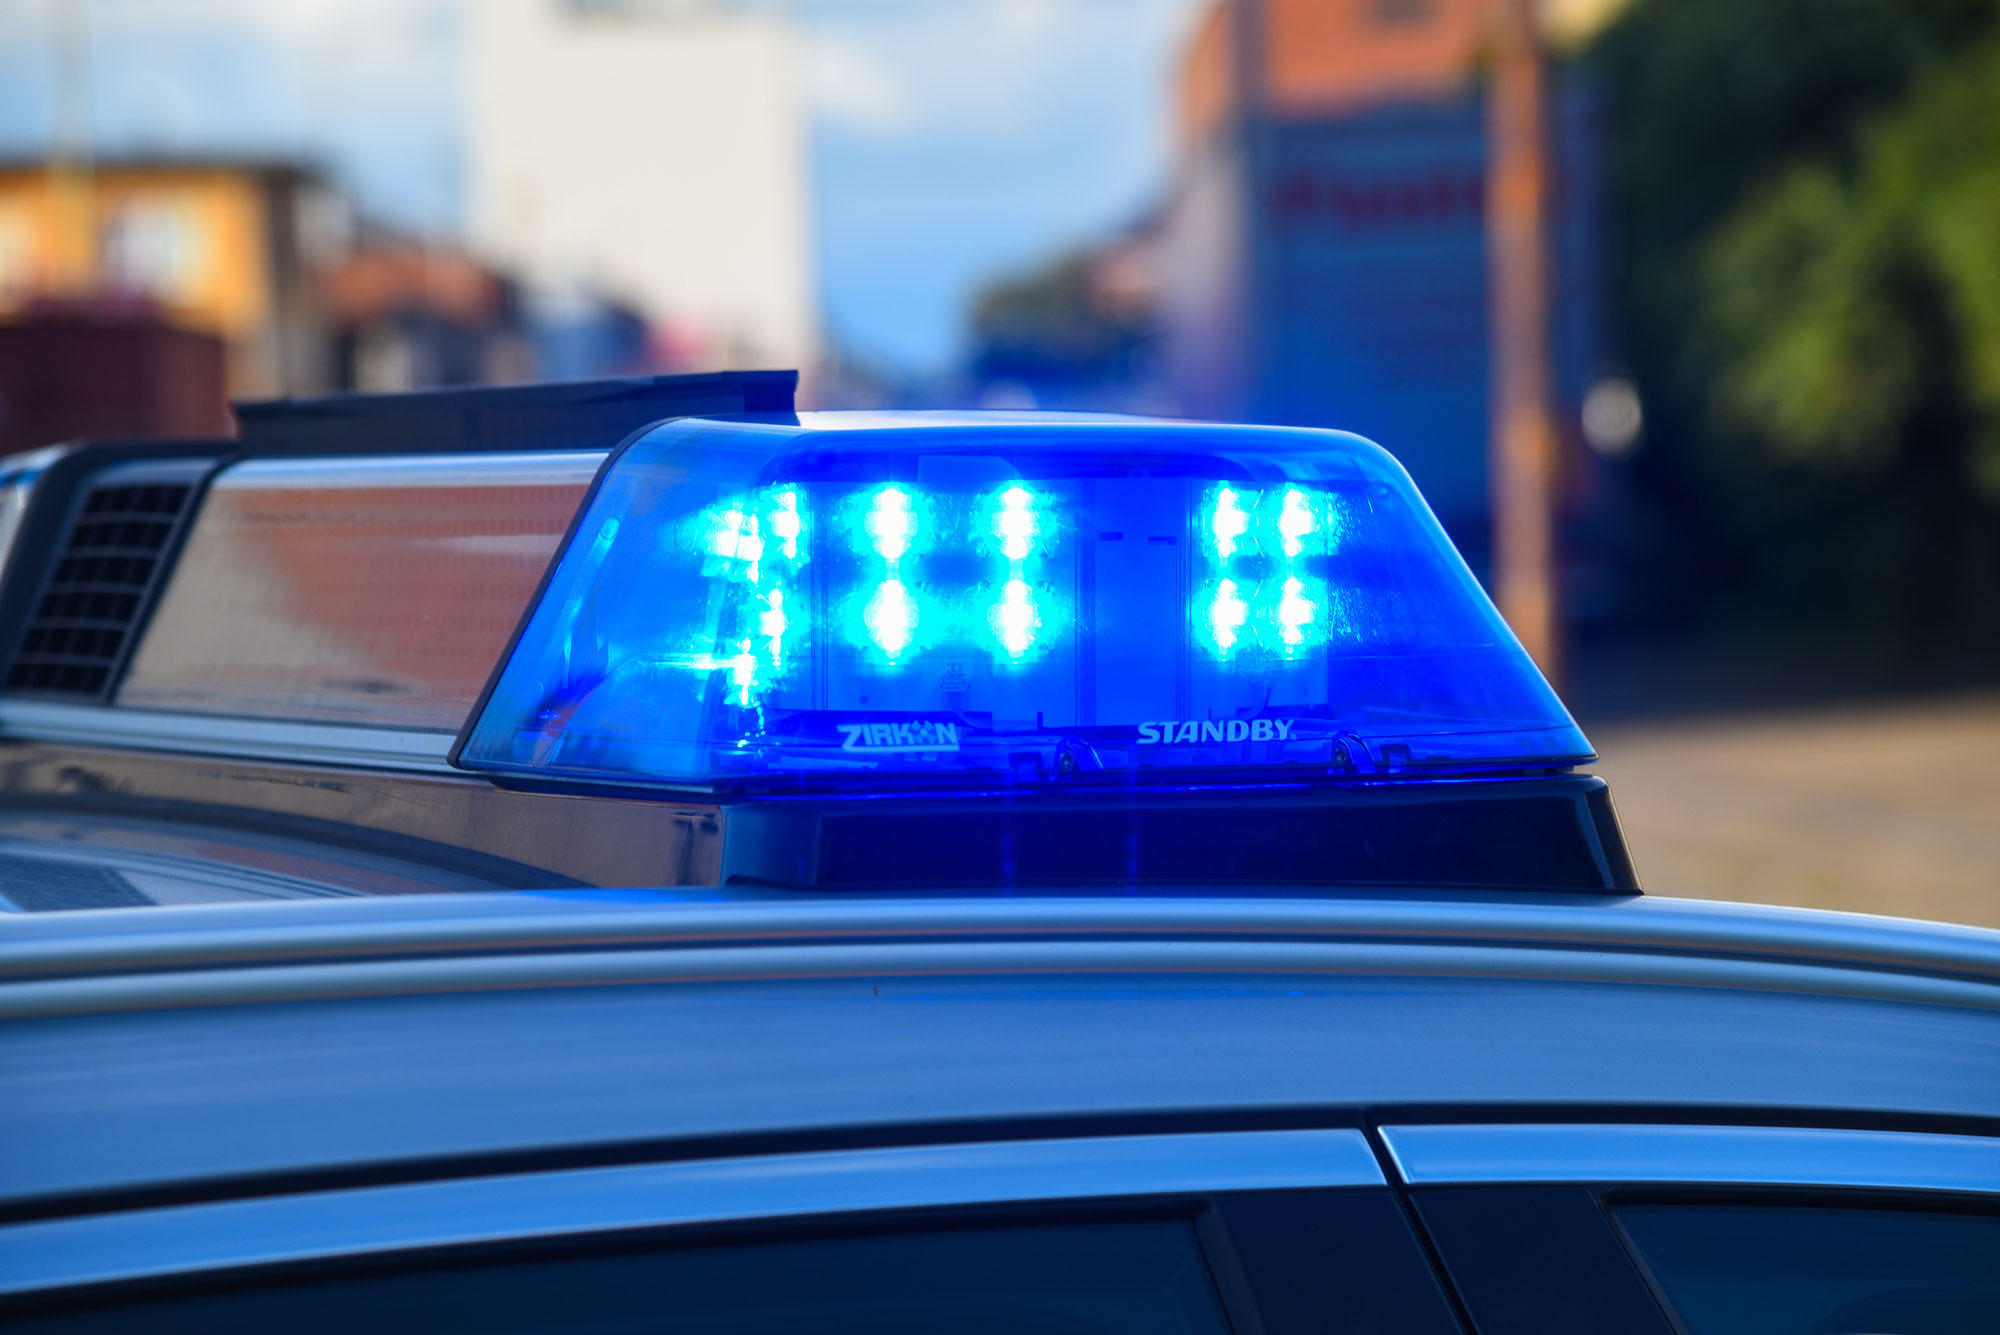 Graben - Neudorf: Größerer Polizeieinsatz wegen vermutlicher Freiheitsberaubung, Körperverletzung und Diebstahl